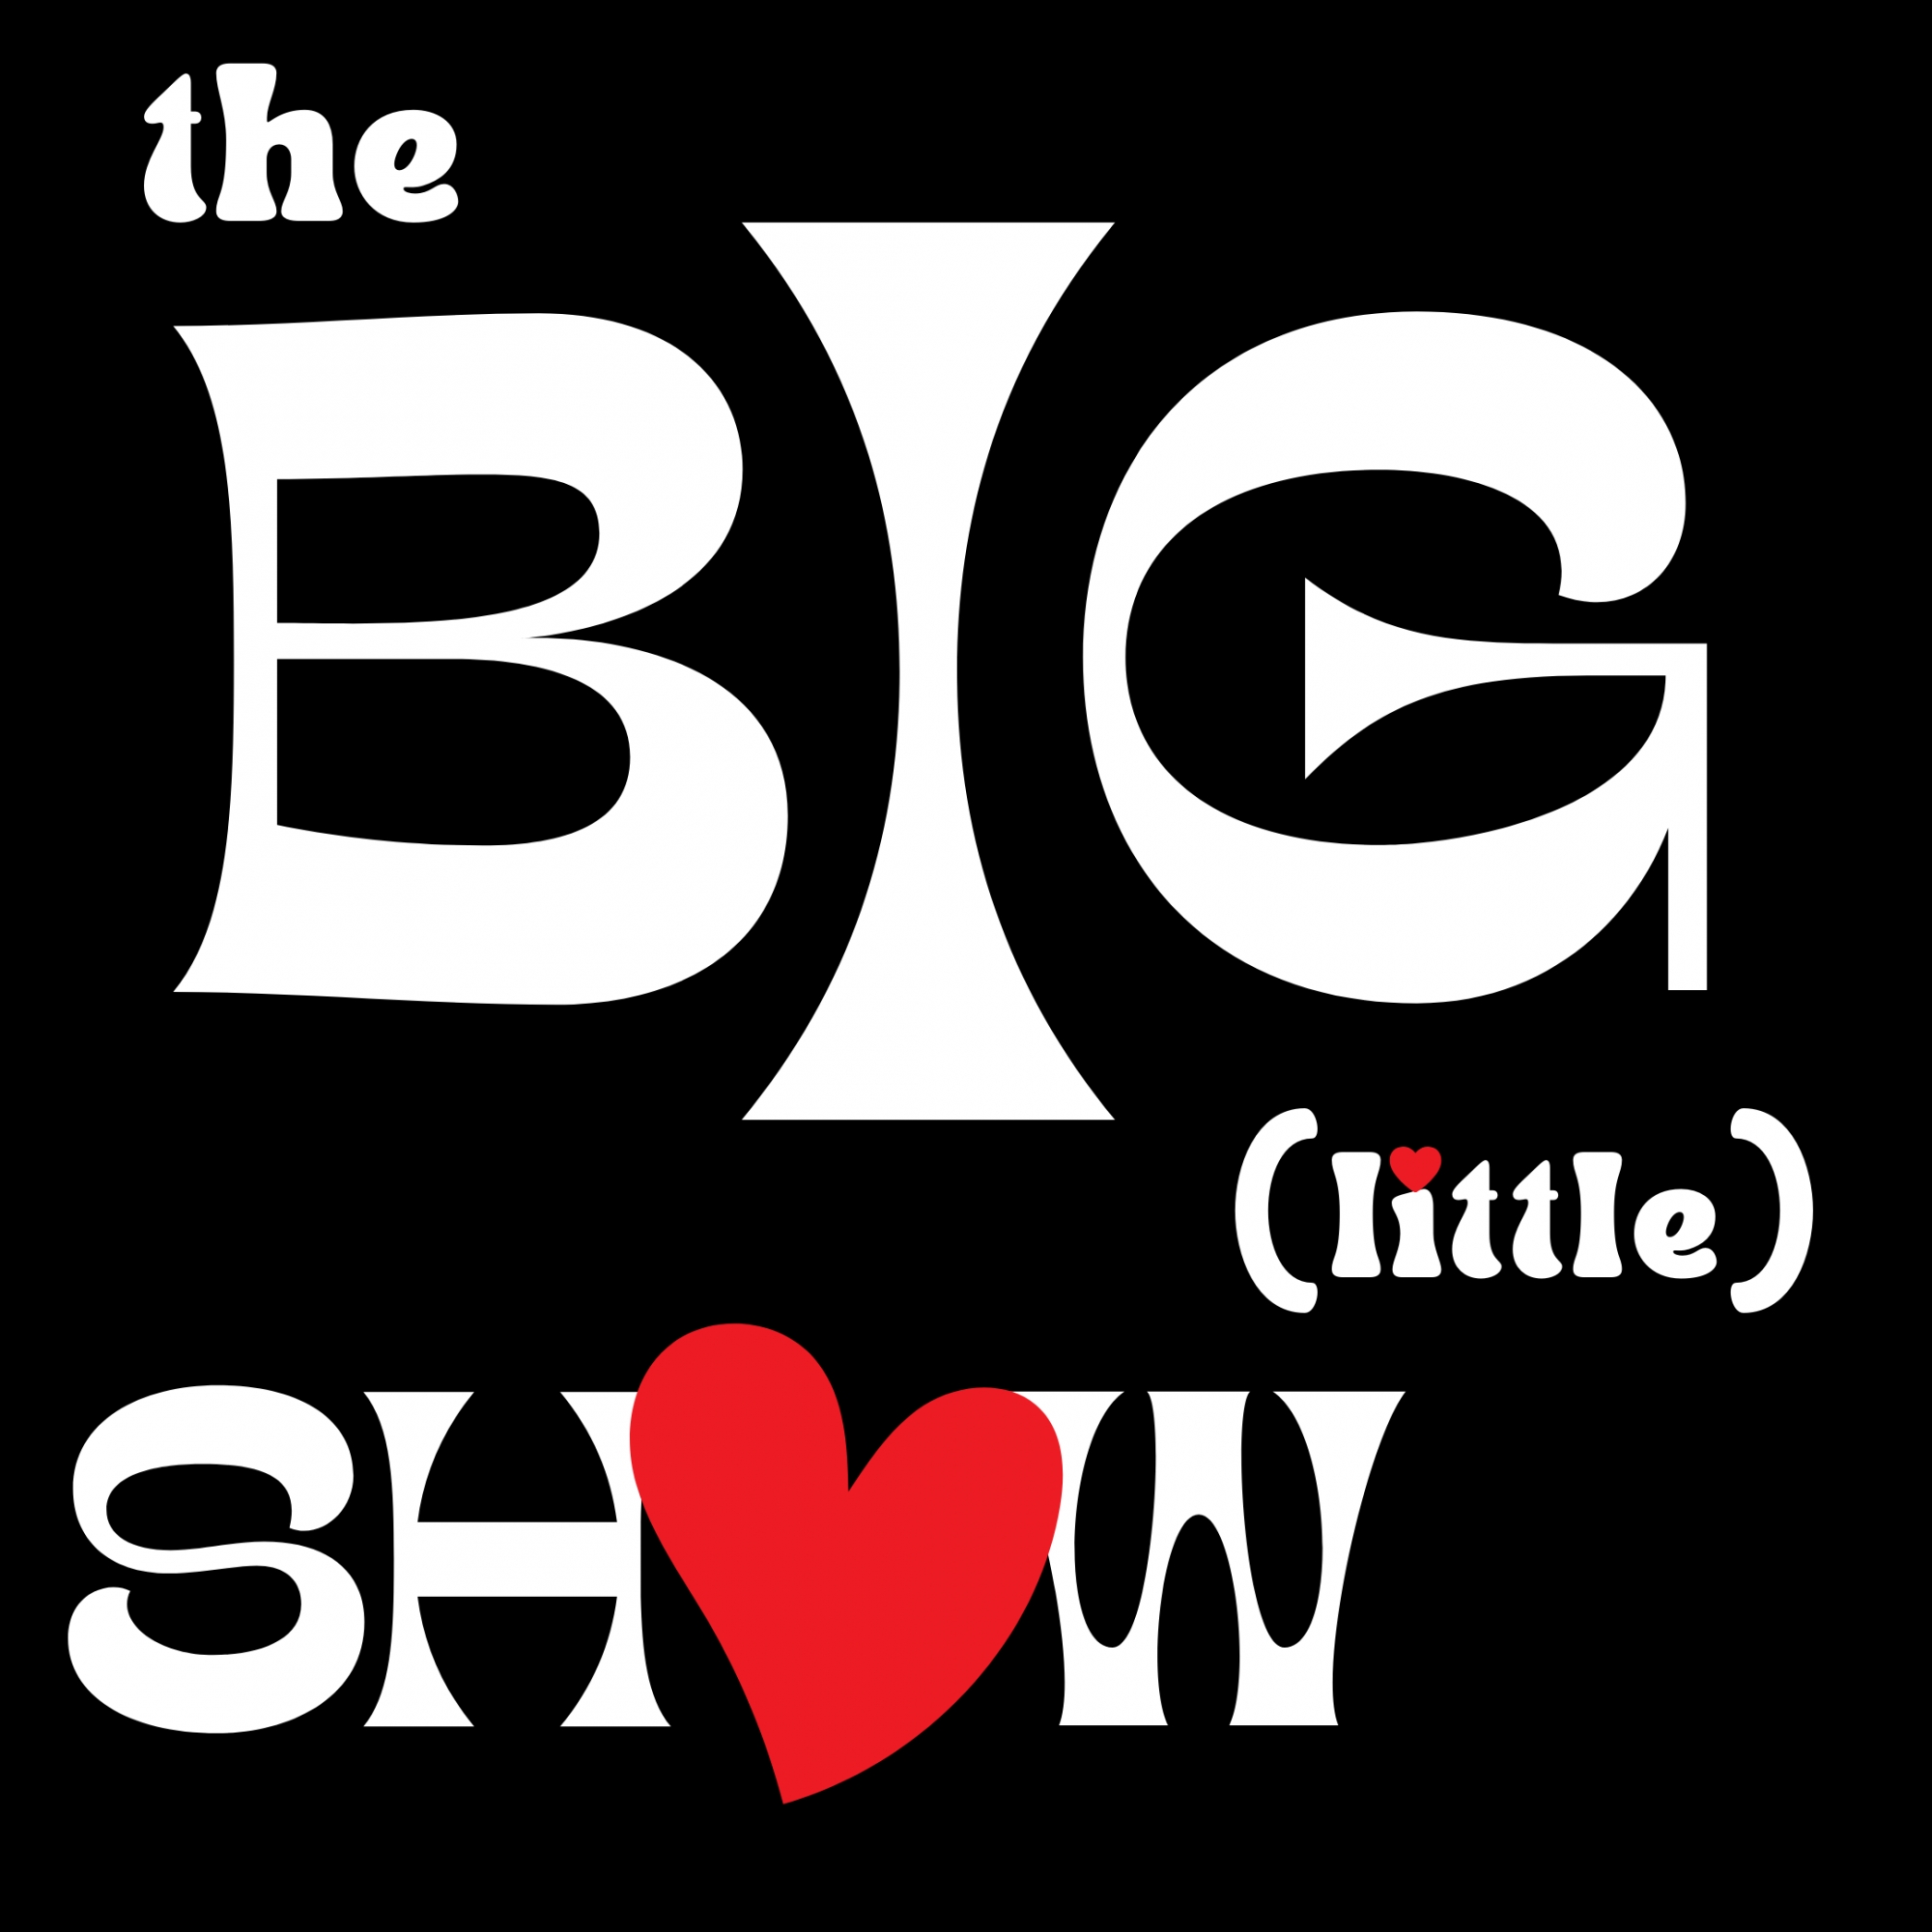 Dec '22 The Big (little) Show - Show 2